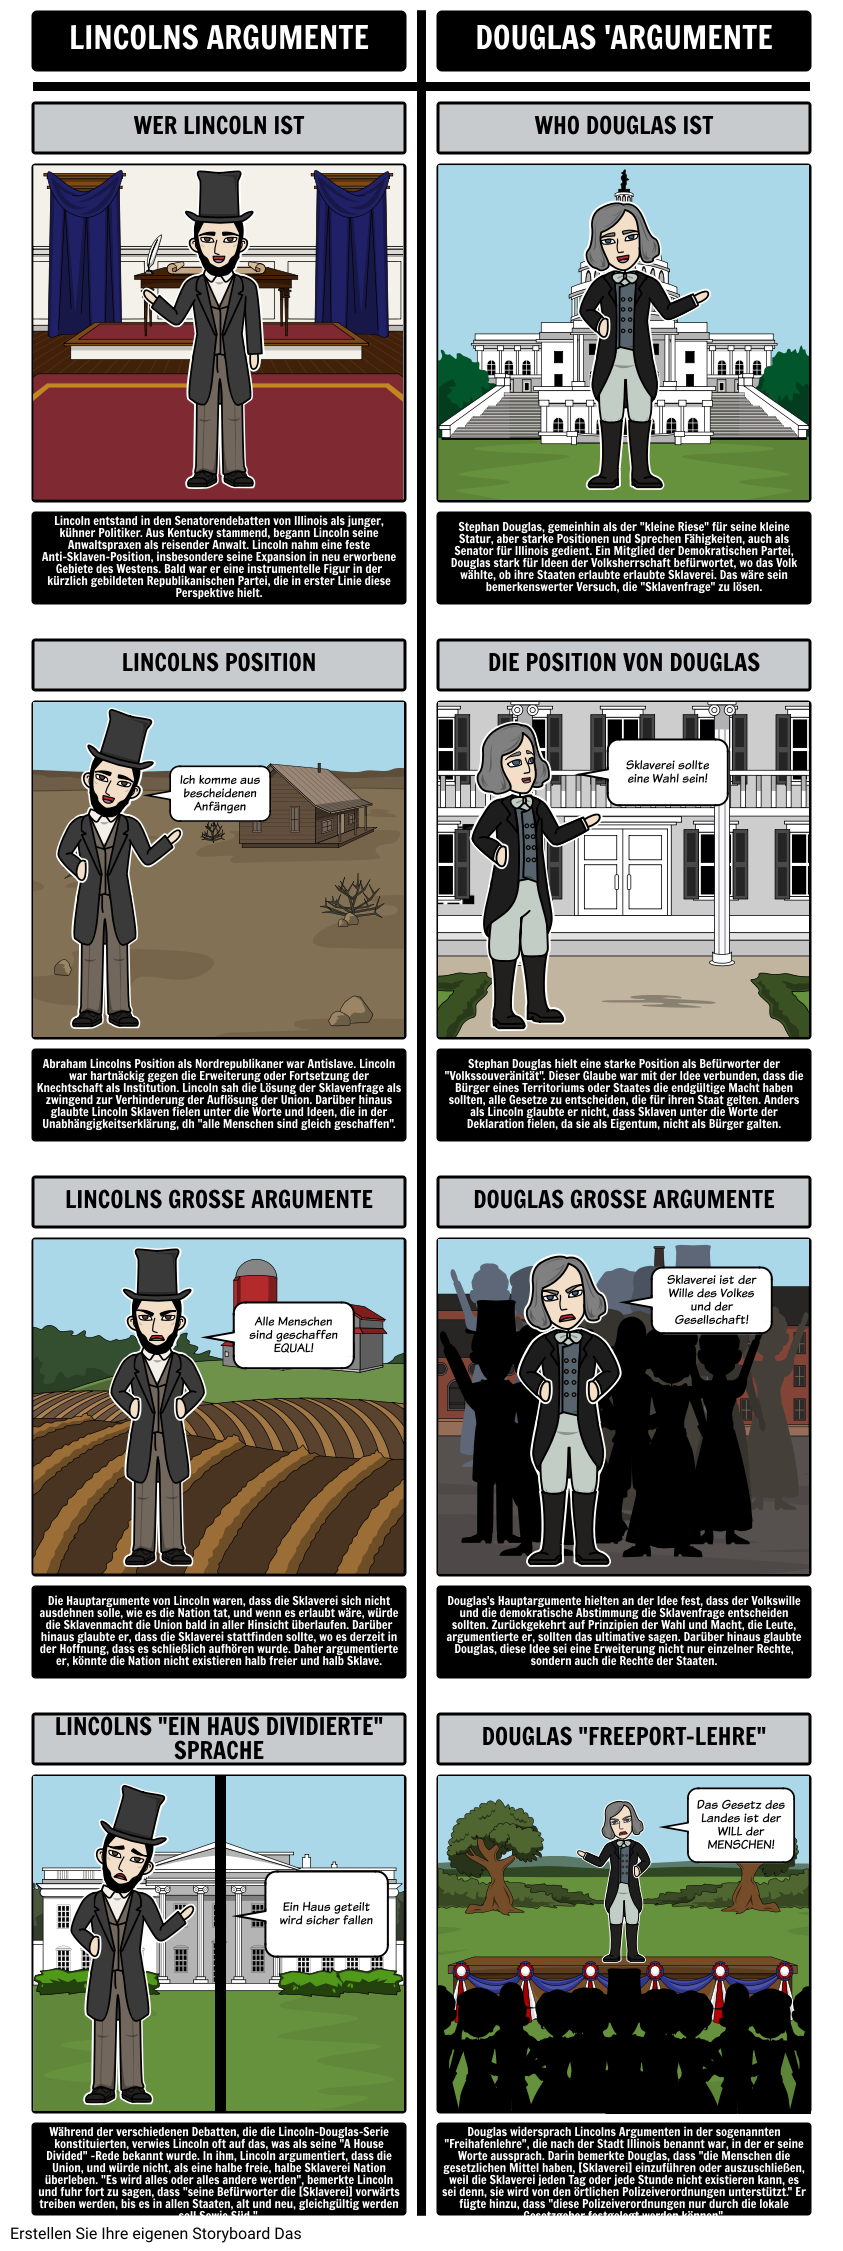 1850s Amerika - Lincoln / Douglas Senatorialverhandlungen von 1854